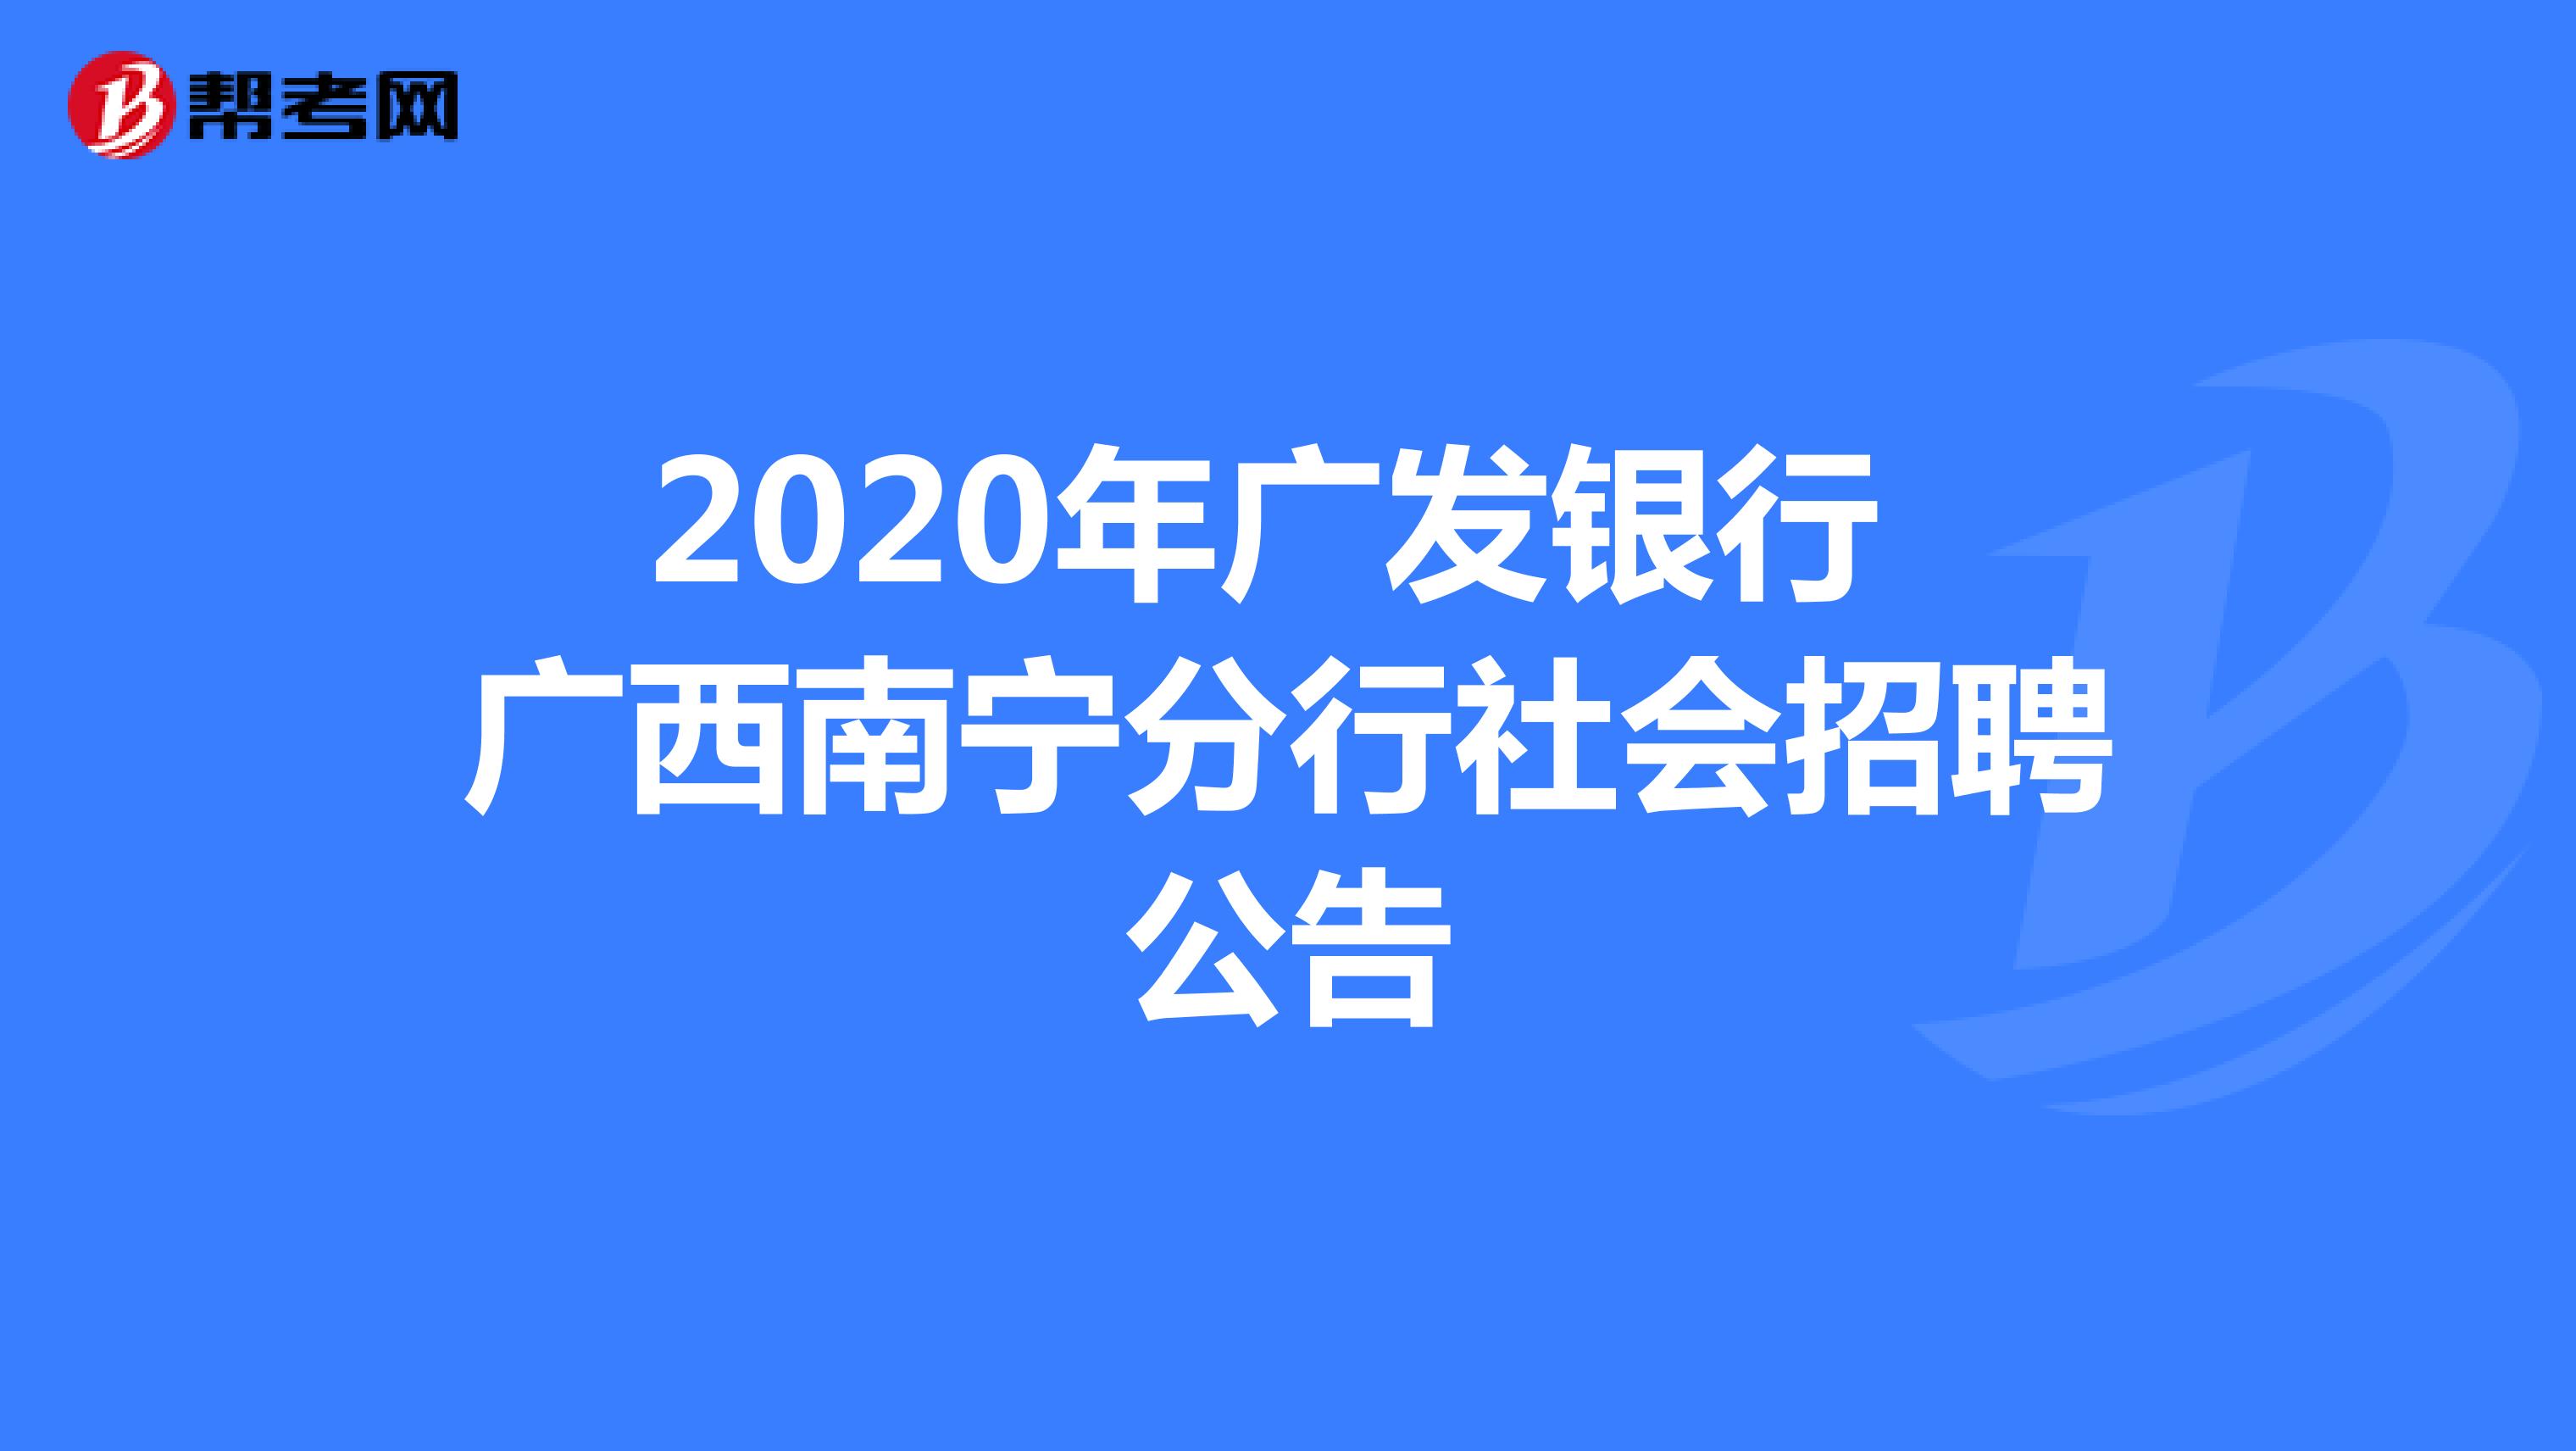 2020年广发银行 广西南宁分行社会招聘公告